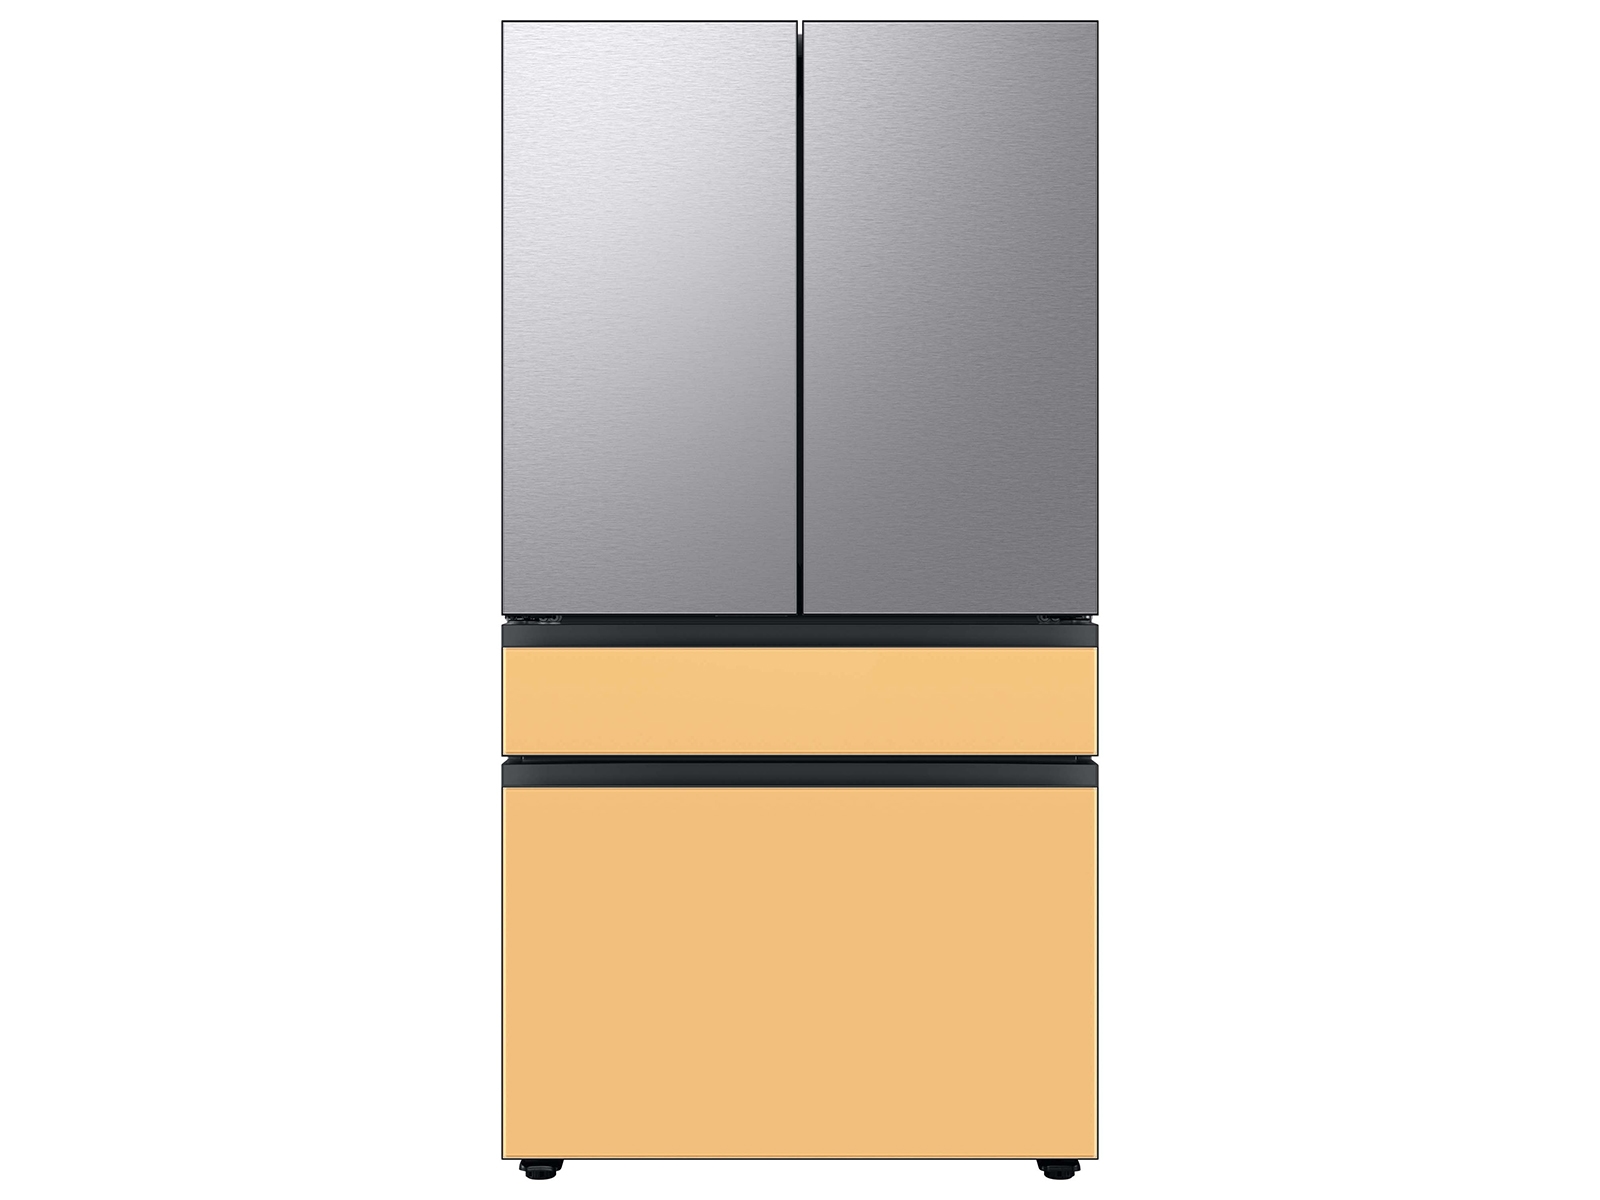 Thumbnail image of Bespoke 4-Door French Door Refrigerator Panel in Stainless Steel - Top Panel